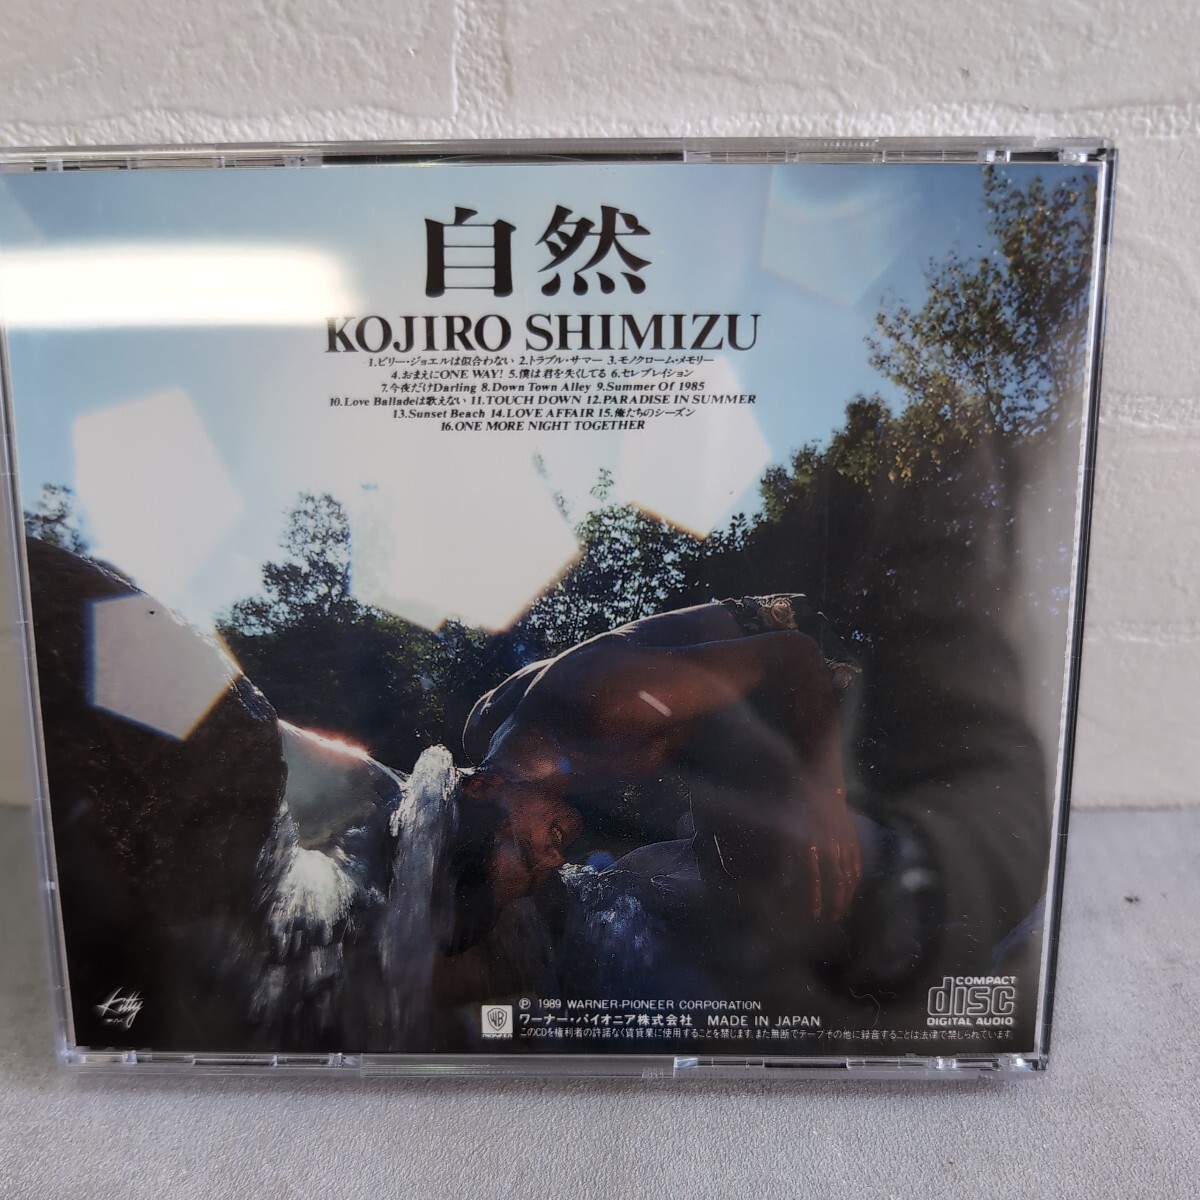 美品 レア 清水宏次朗 【自然】 CD ベストアルバム 1989年 帯付き 美盤 ワーナーパイオニア KOJIRO SHIMIZU ビーパップハイスクールの画像2